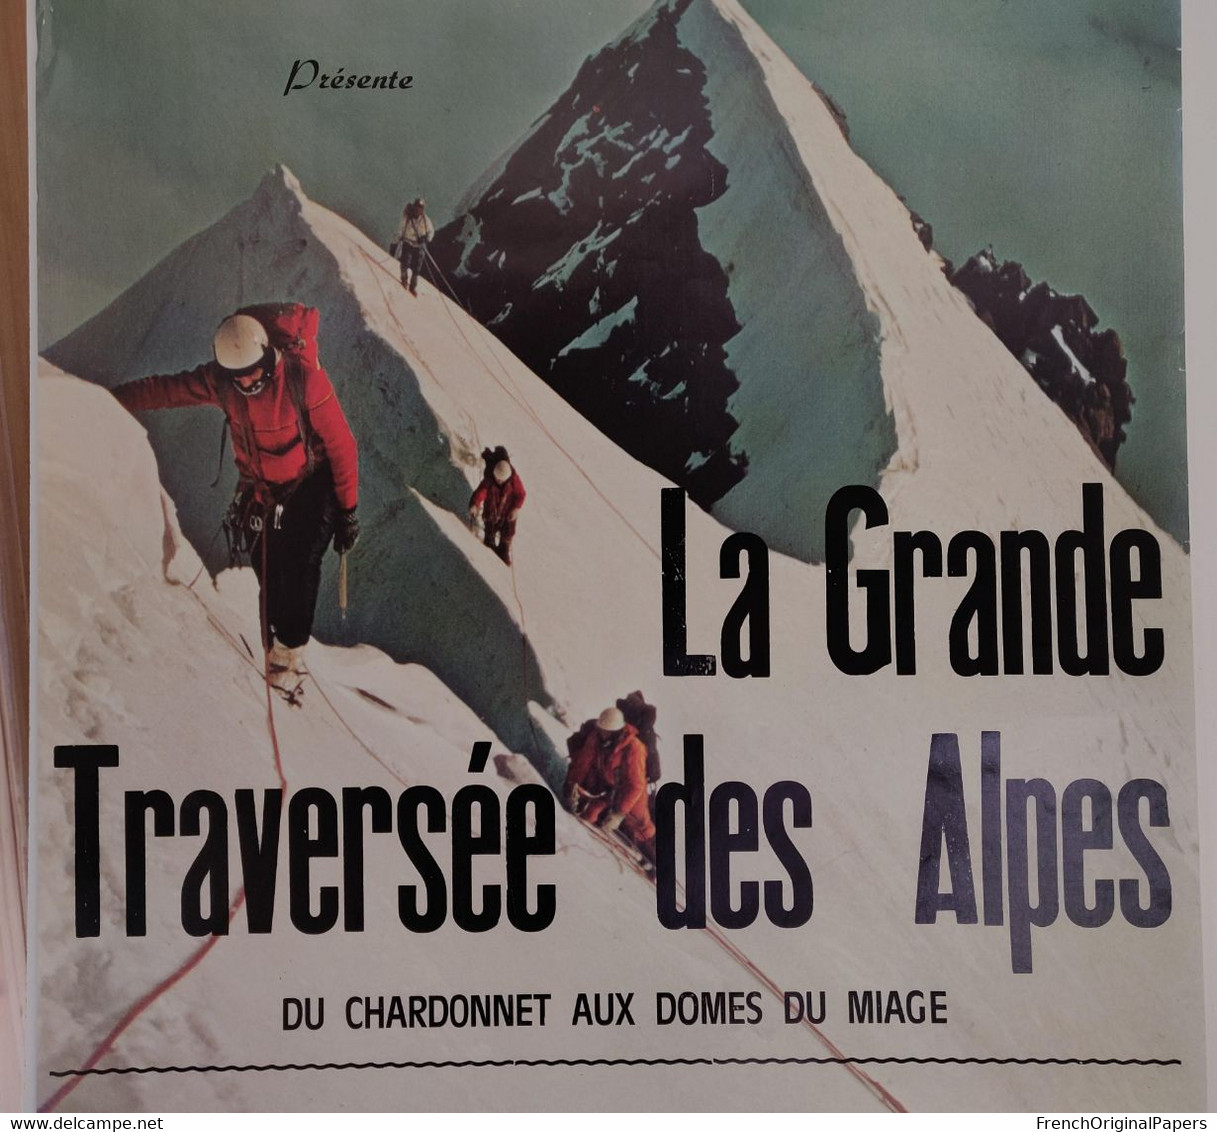 Louis Audoubert Rare Affiche 1970s Grande Traversée Des Alpes Du Chardonnet Aux Dômes De Miage Chamonix Saint-Gervais - Manifesti